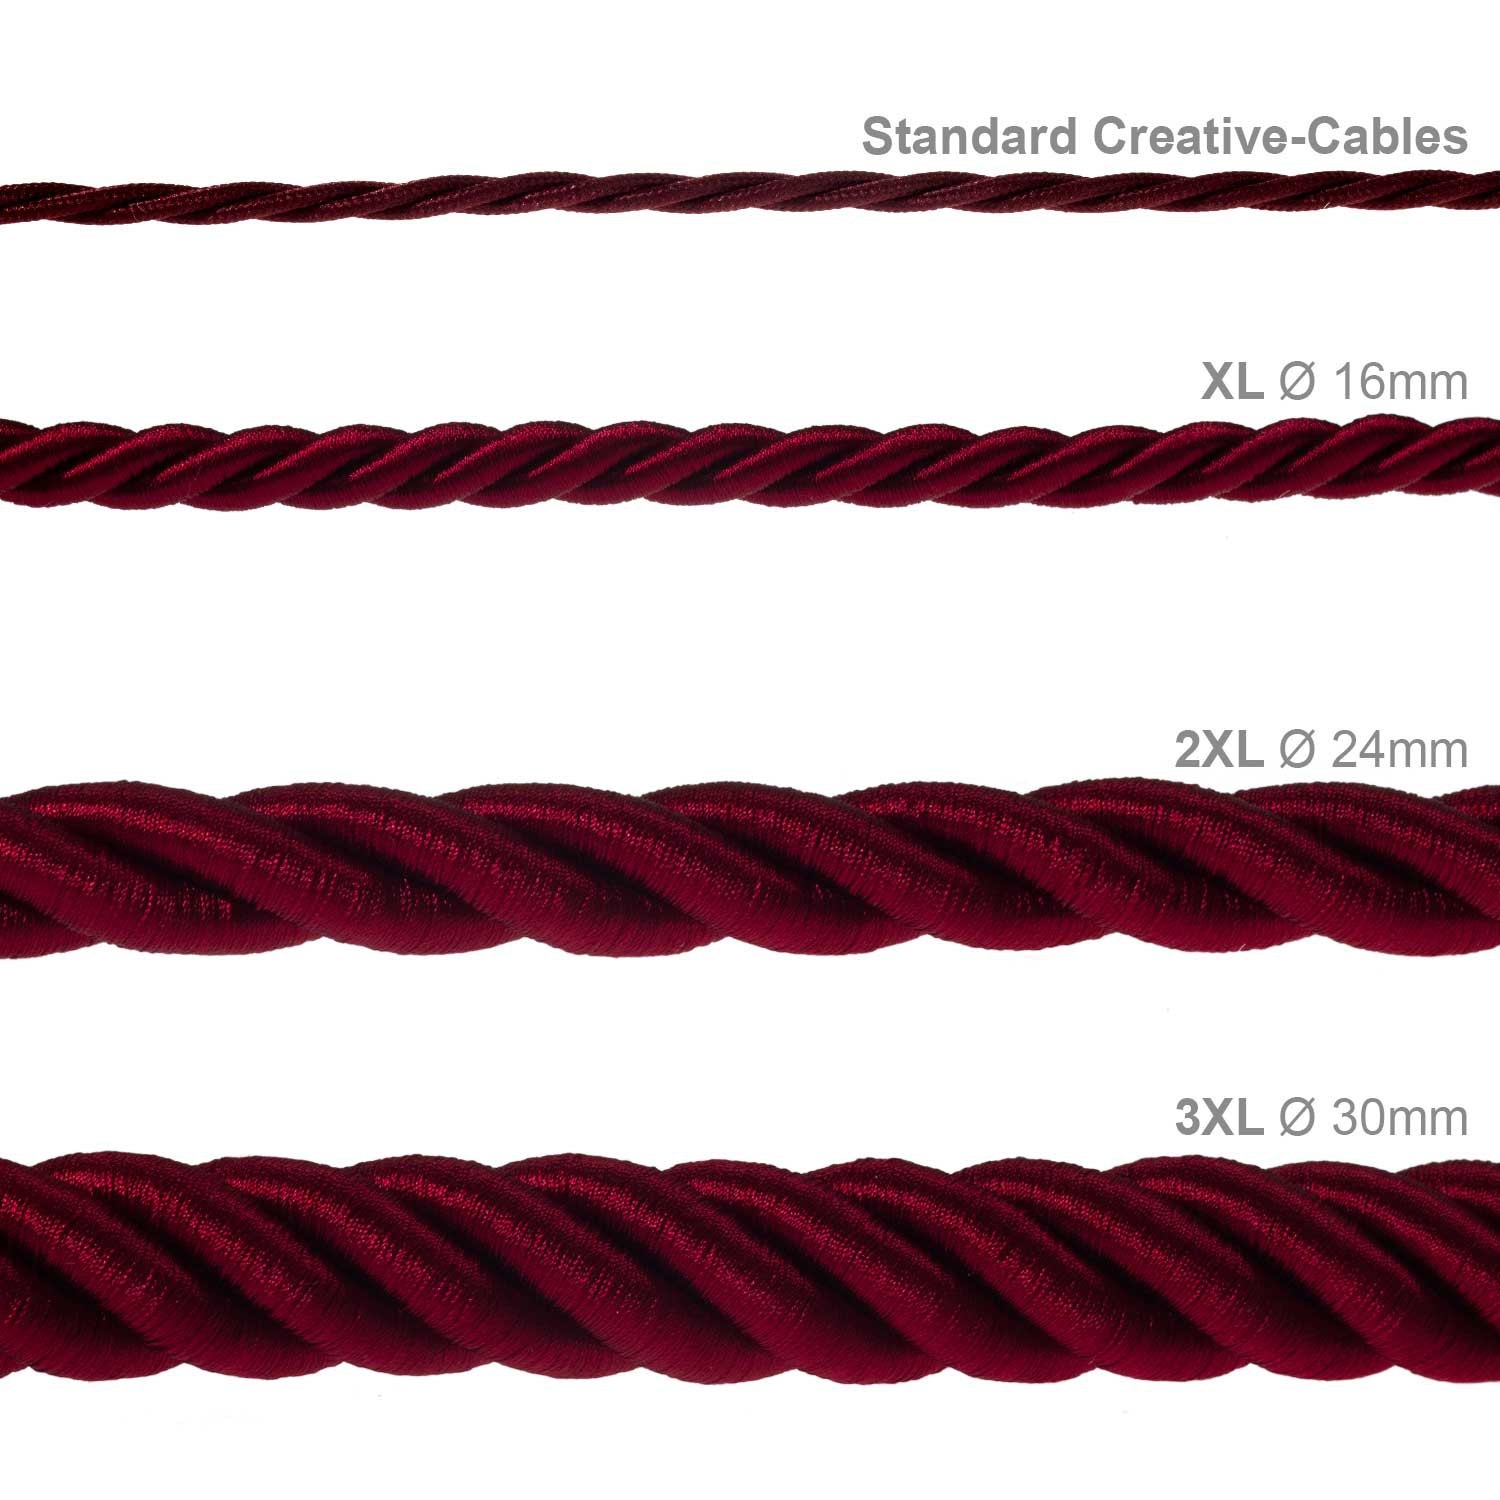 Cordón 3XL, cable eléctrico 3x0,75, recubierto en tejido burdeos oscuro brillante. Diámetro: 30mm.